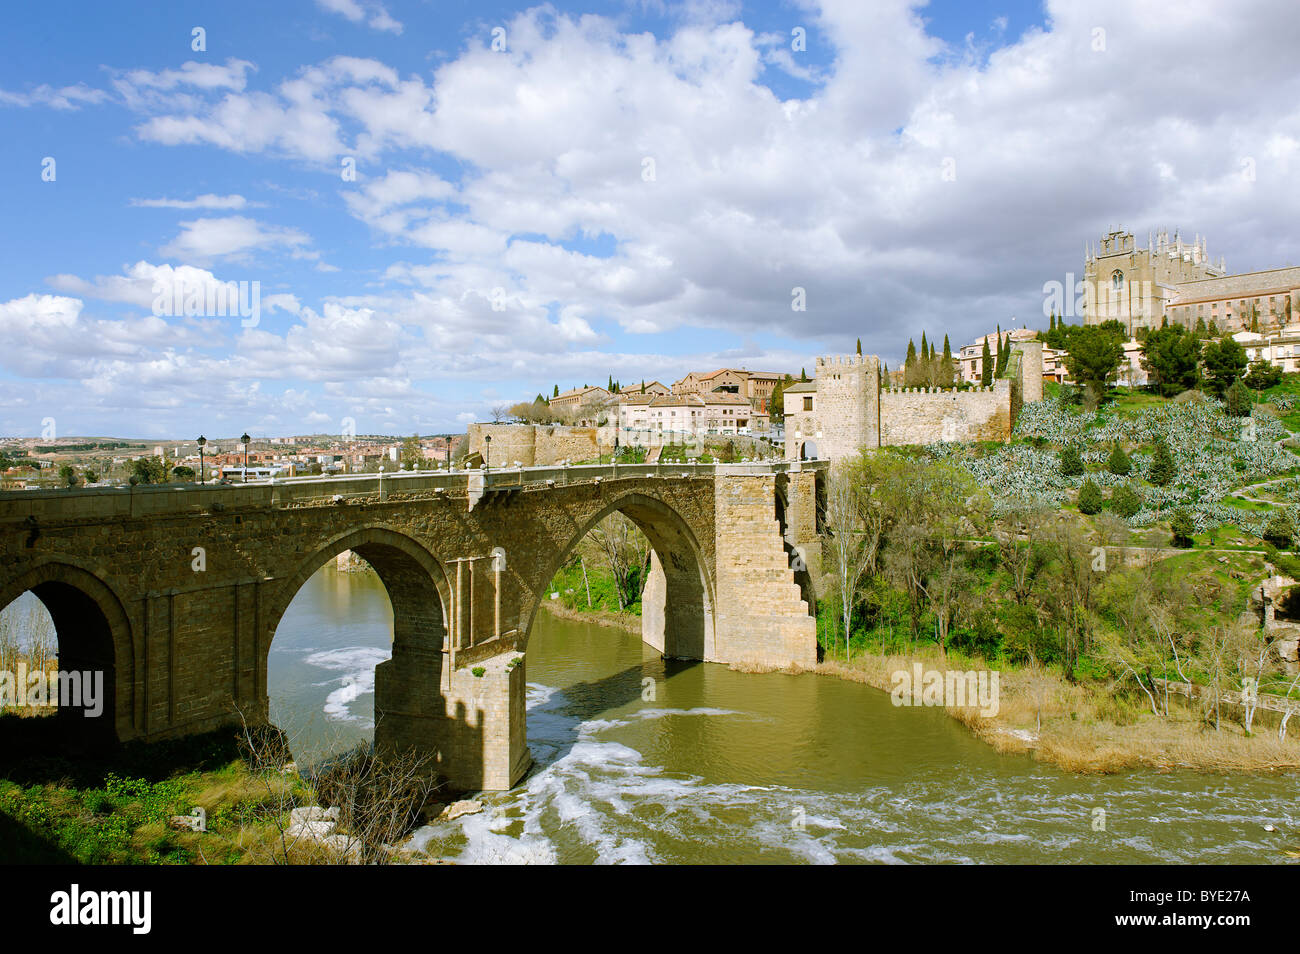 Puente San Martin pont sur le Rio Tajo River, Toledo, Castille-La Manche, Espagne, Europe Banque D'Images